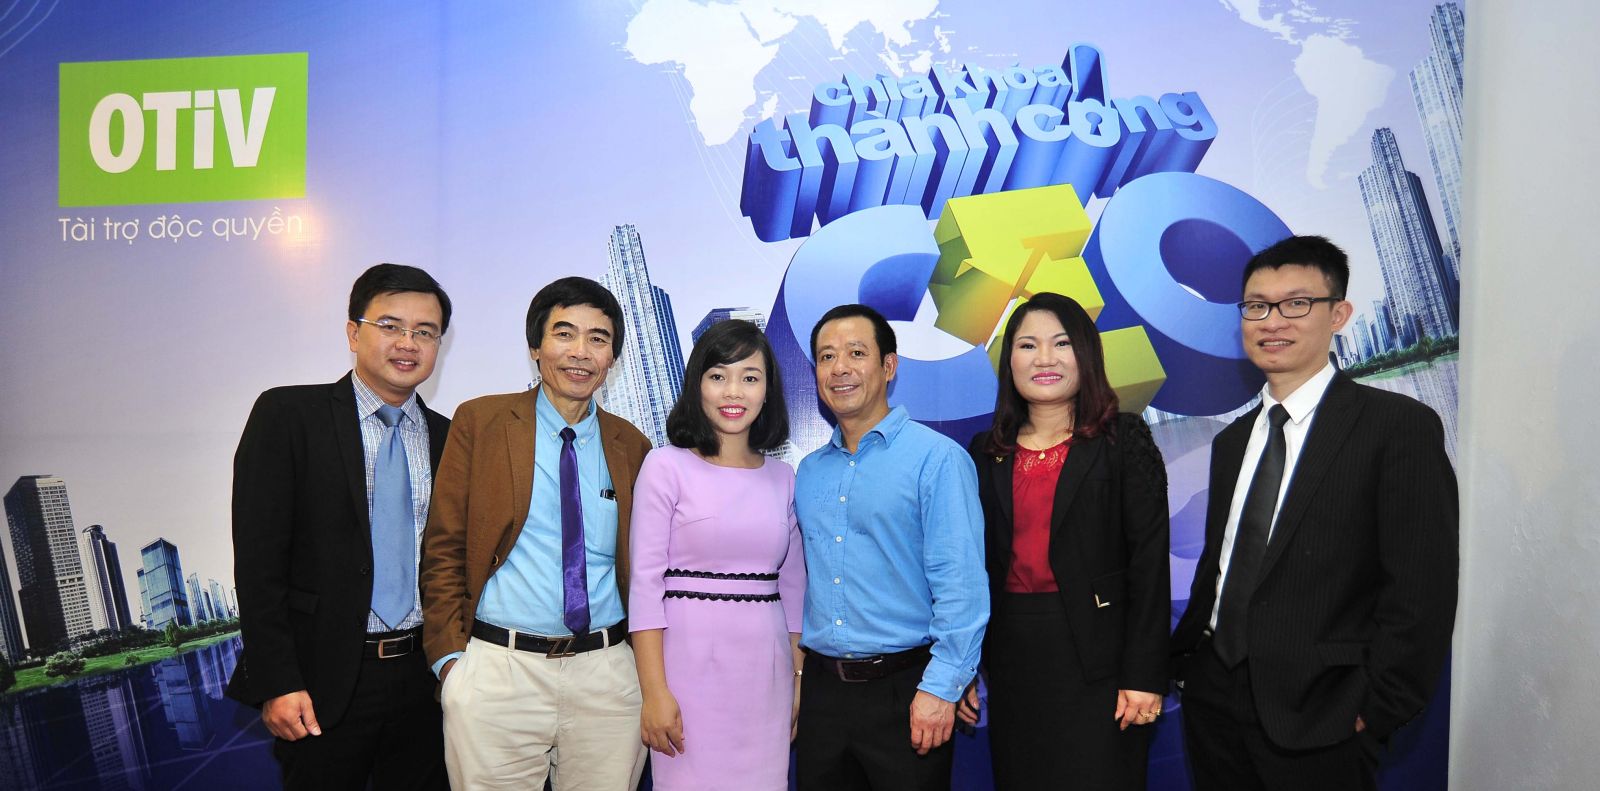 Anh Nguyễn Văn Mết (ngoài cùng bên trái) chụp ảnh lưu niệm cùng với các Doanh nhân và Chuyên gia trong chương trình CEO – Chìa khóa thành công của VTV1